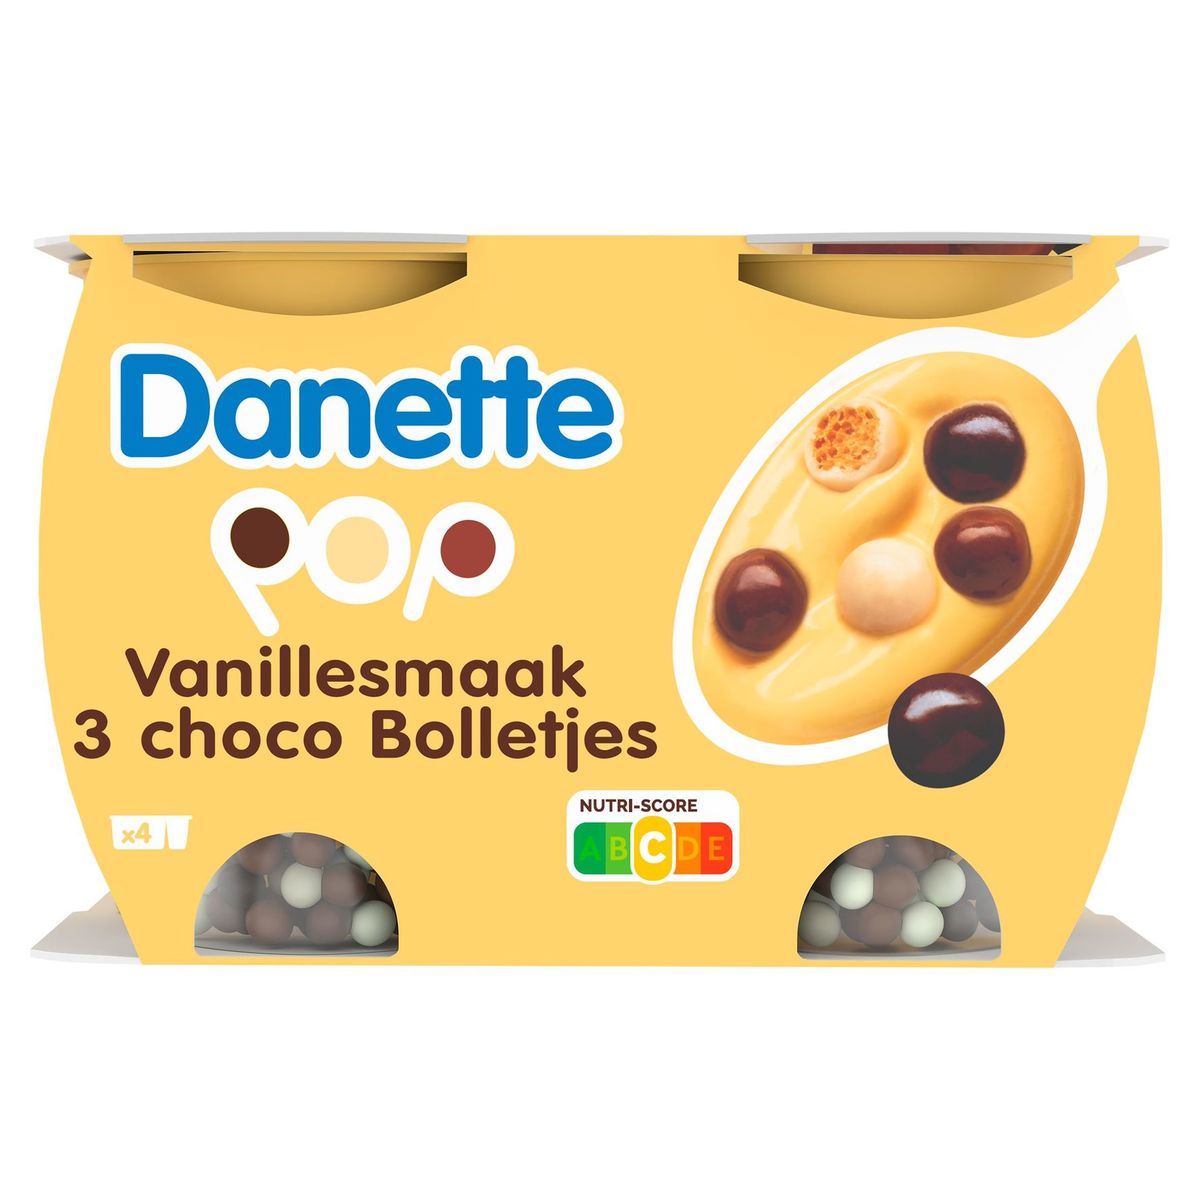 Danette Pop Crème Dessert Saveur Vanille & Billes 3 Chocos 4 x 117 g